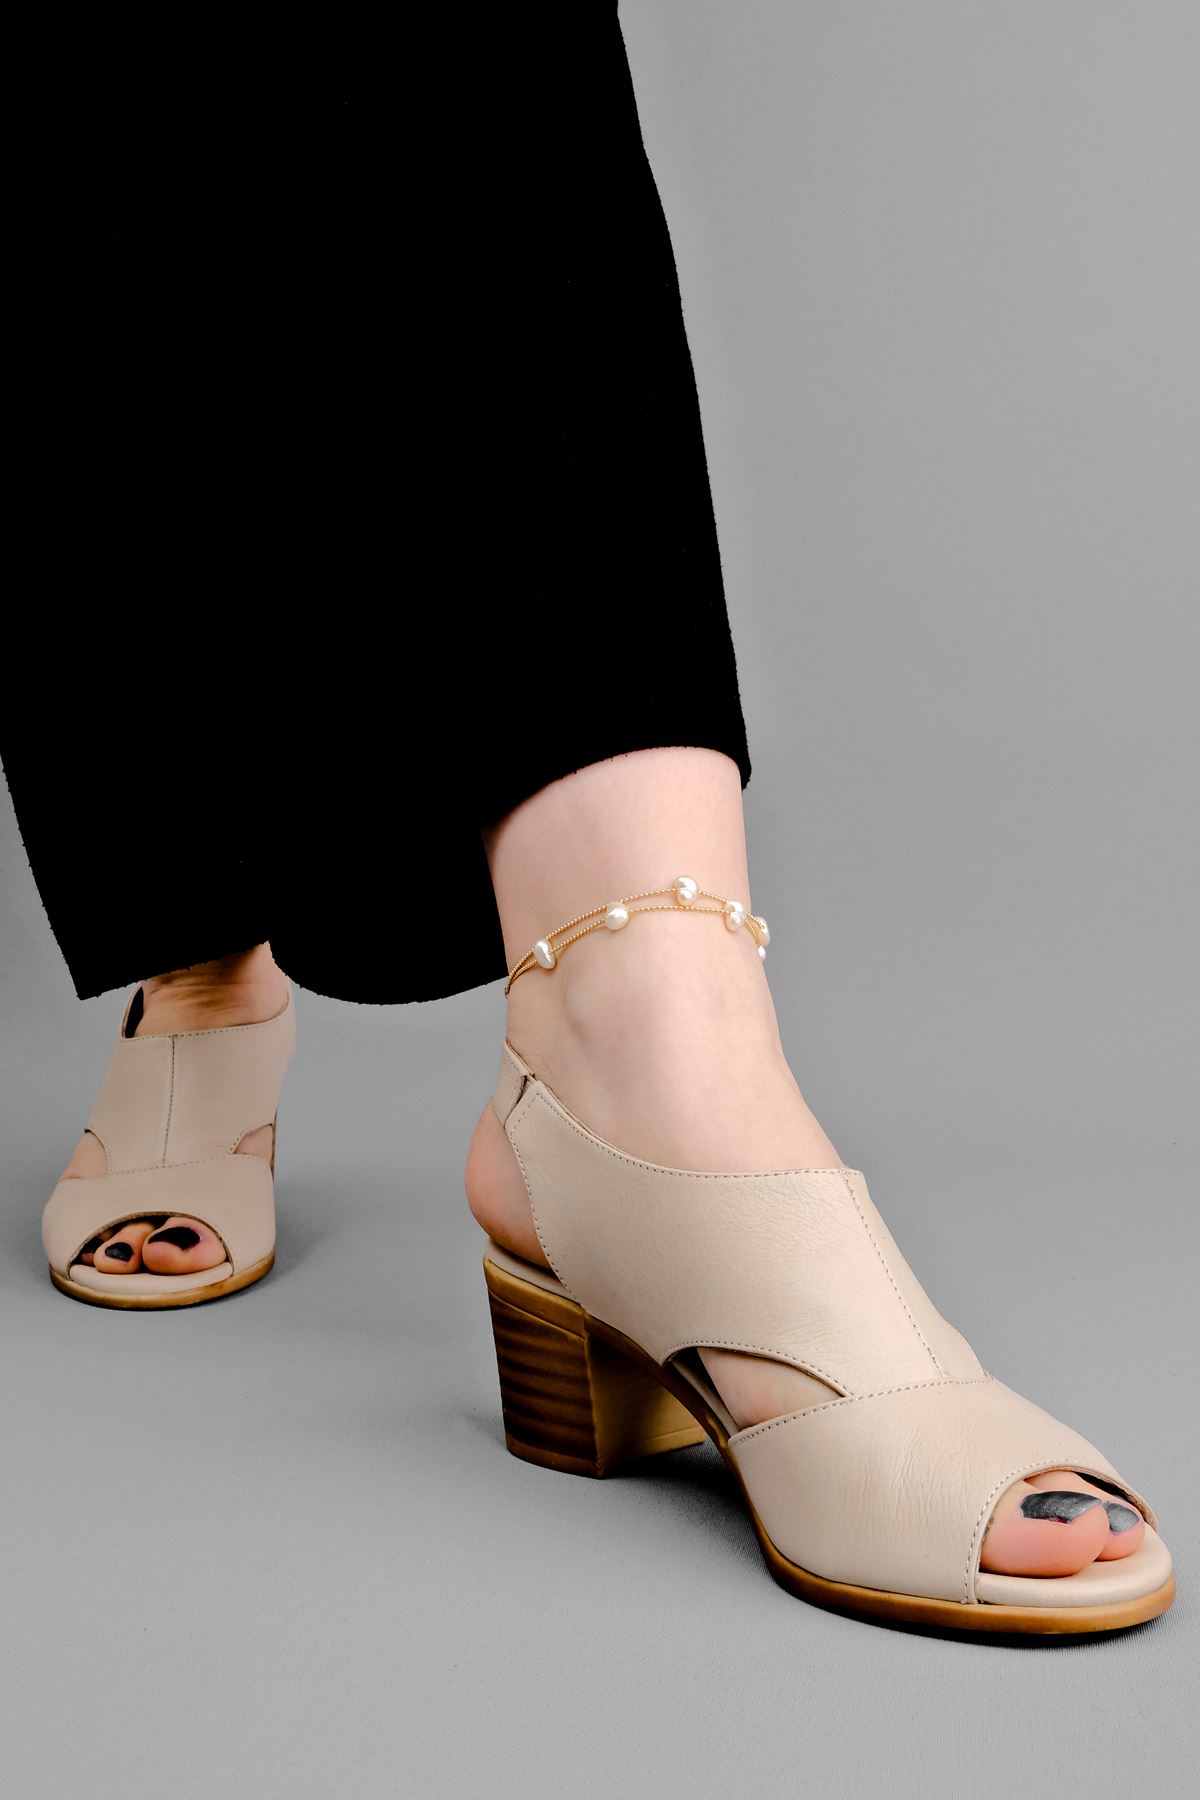 Breda Kadın Hakiki Deri Topuklu Ayakkabı-Krem